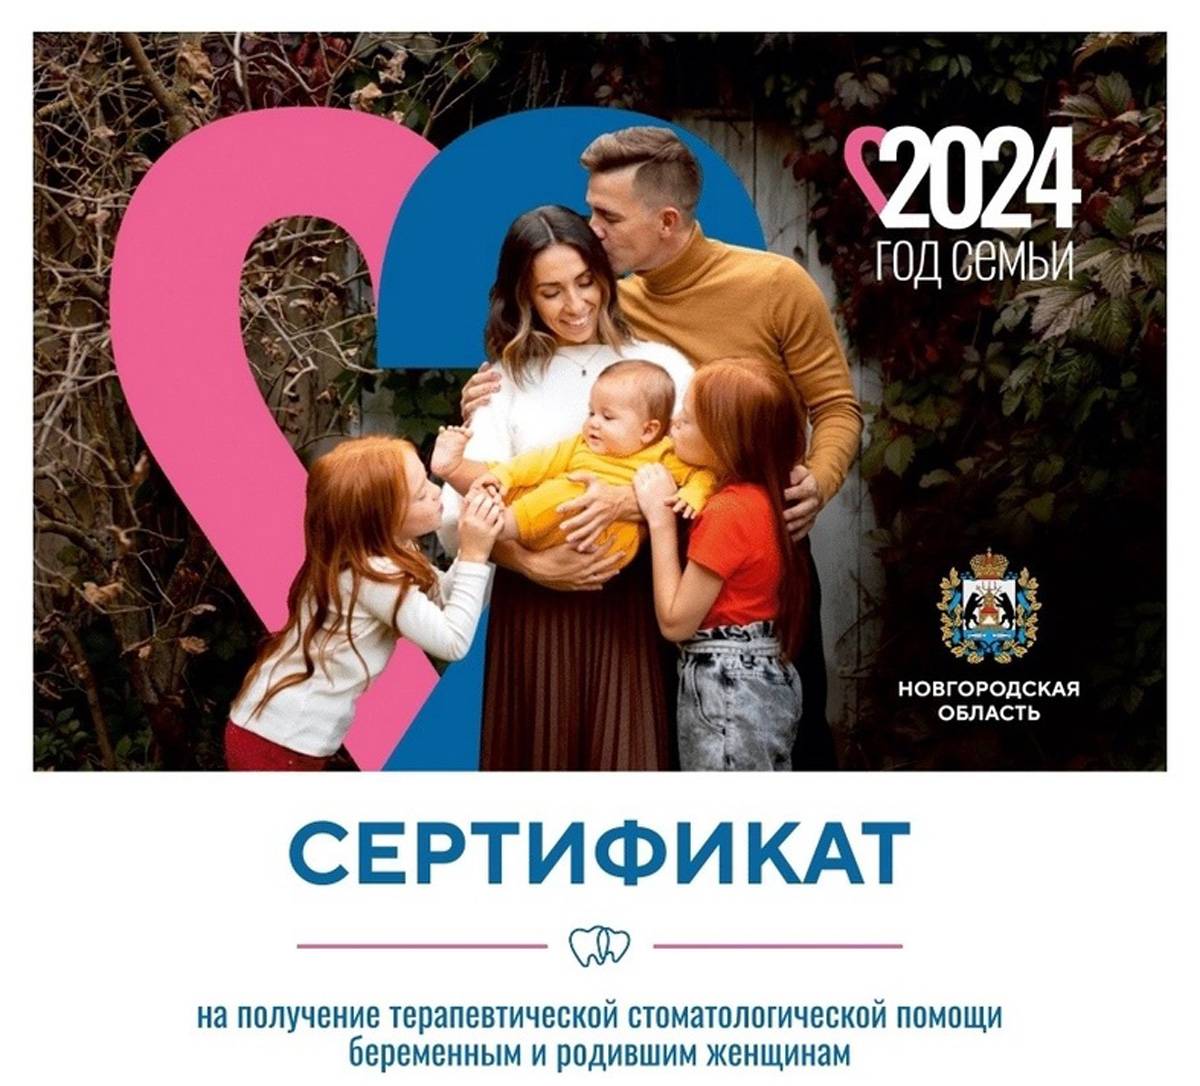 В Старорусском районе получить сертификаты можно будет с 25 марта в женской консультации и детской поликлинике.